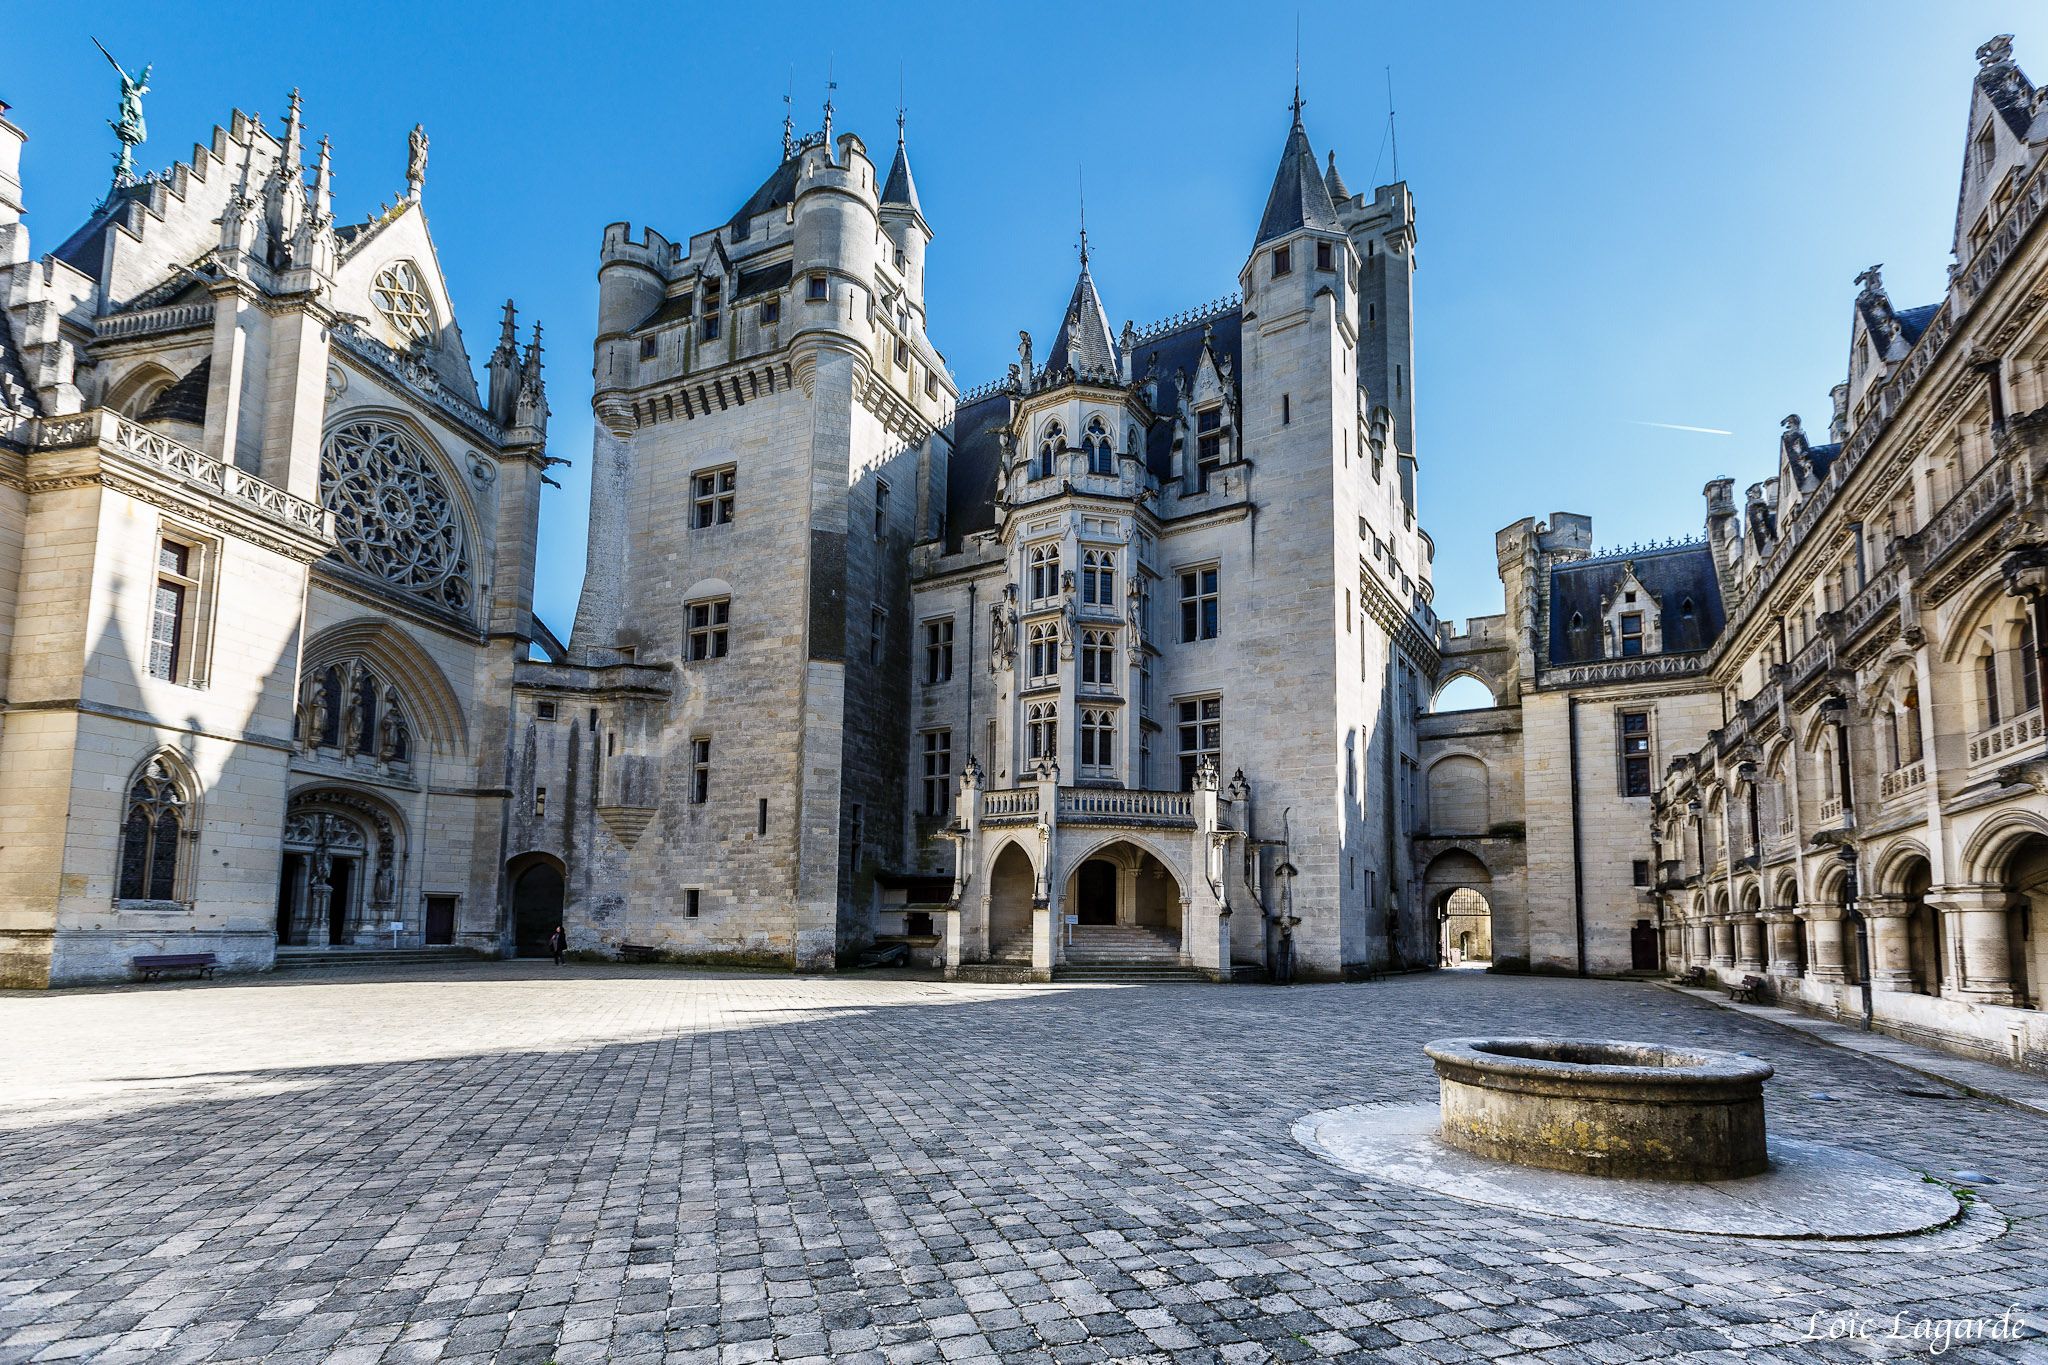 Chateau de Pierrefonds, France - Google Search | #RockxOnTour ...